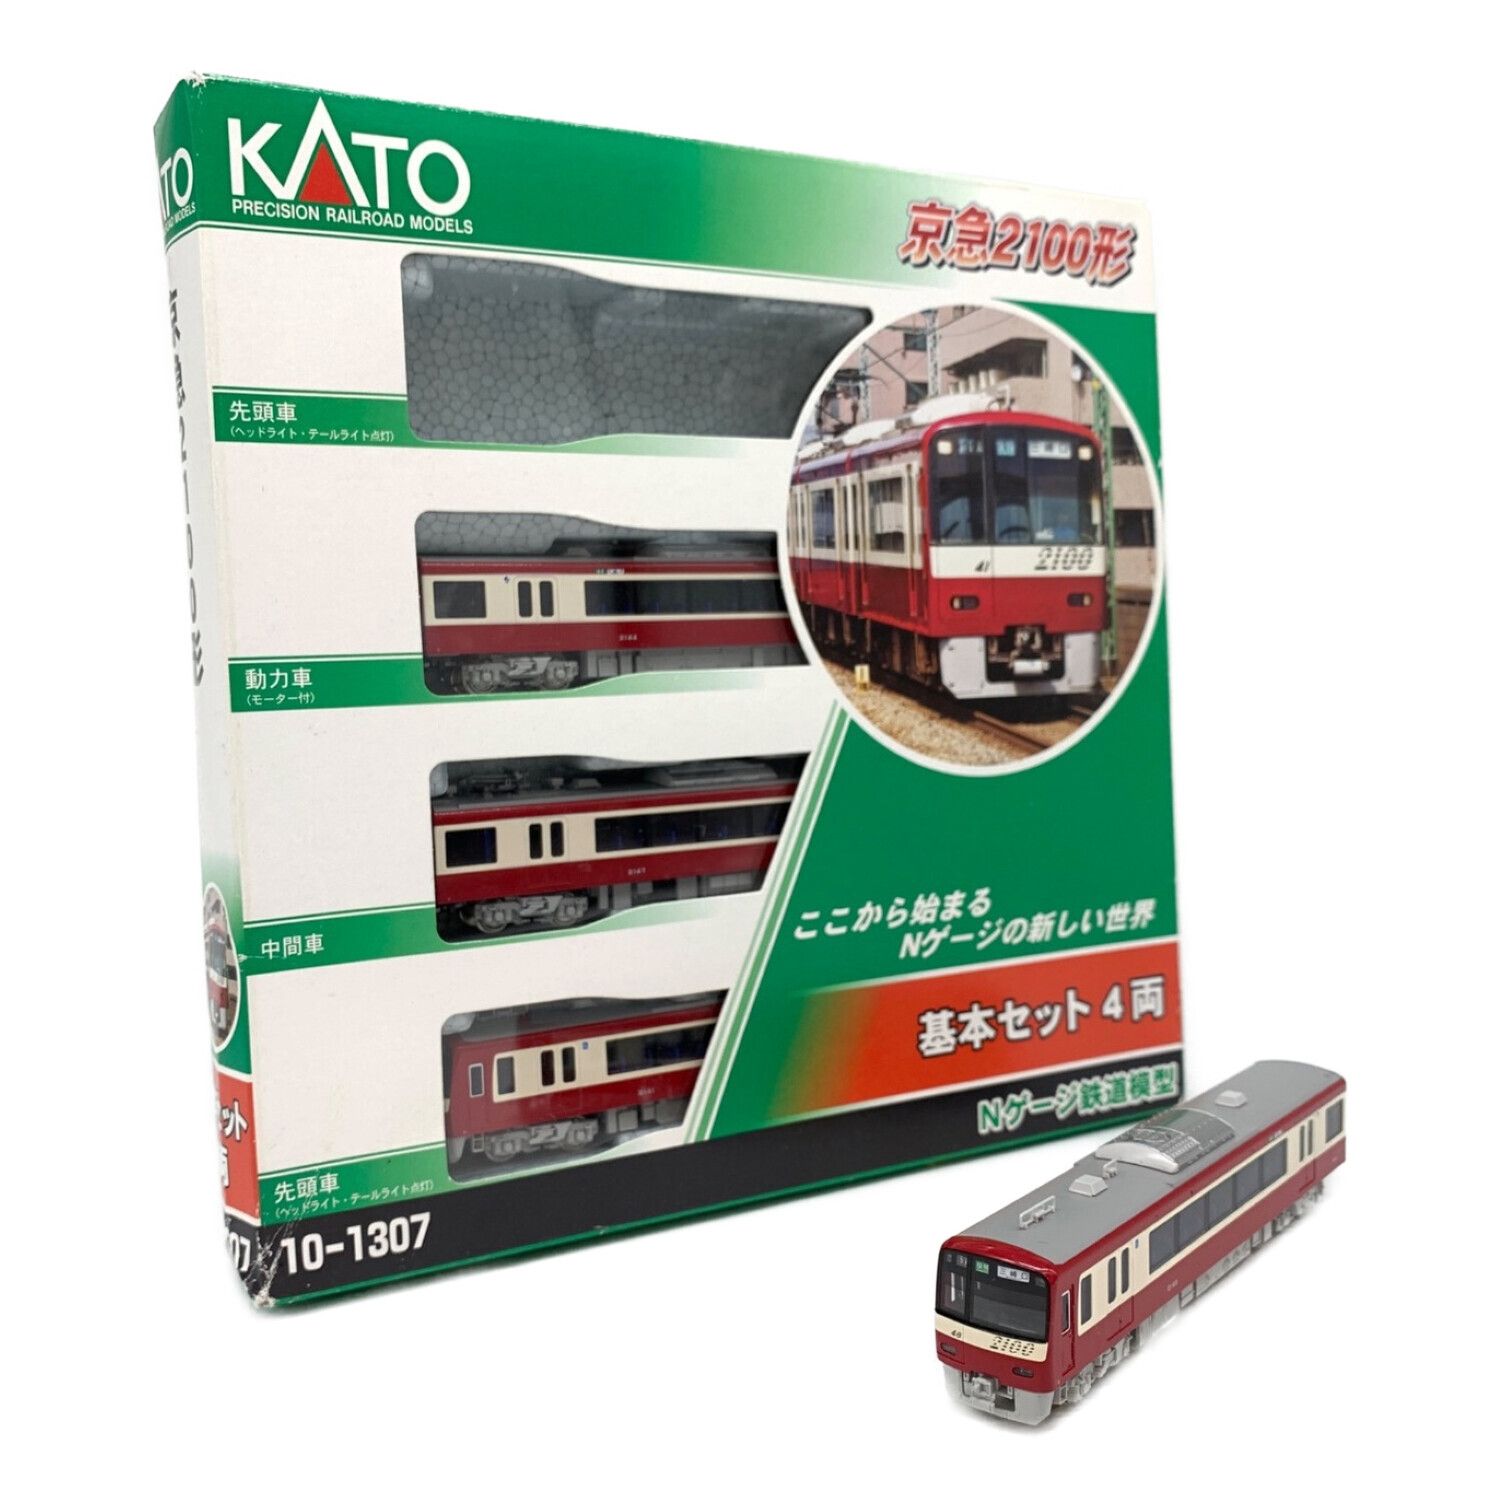 KATO (カトー) Nゲージ 京急 2100形 4両基本 10-1307 鉄道模型